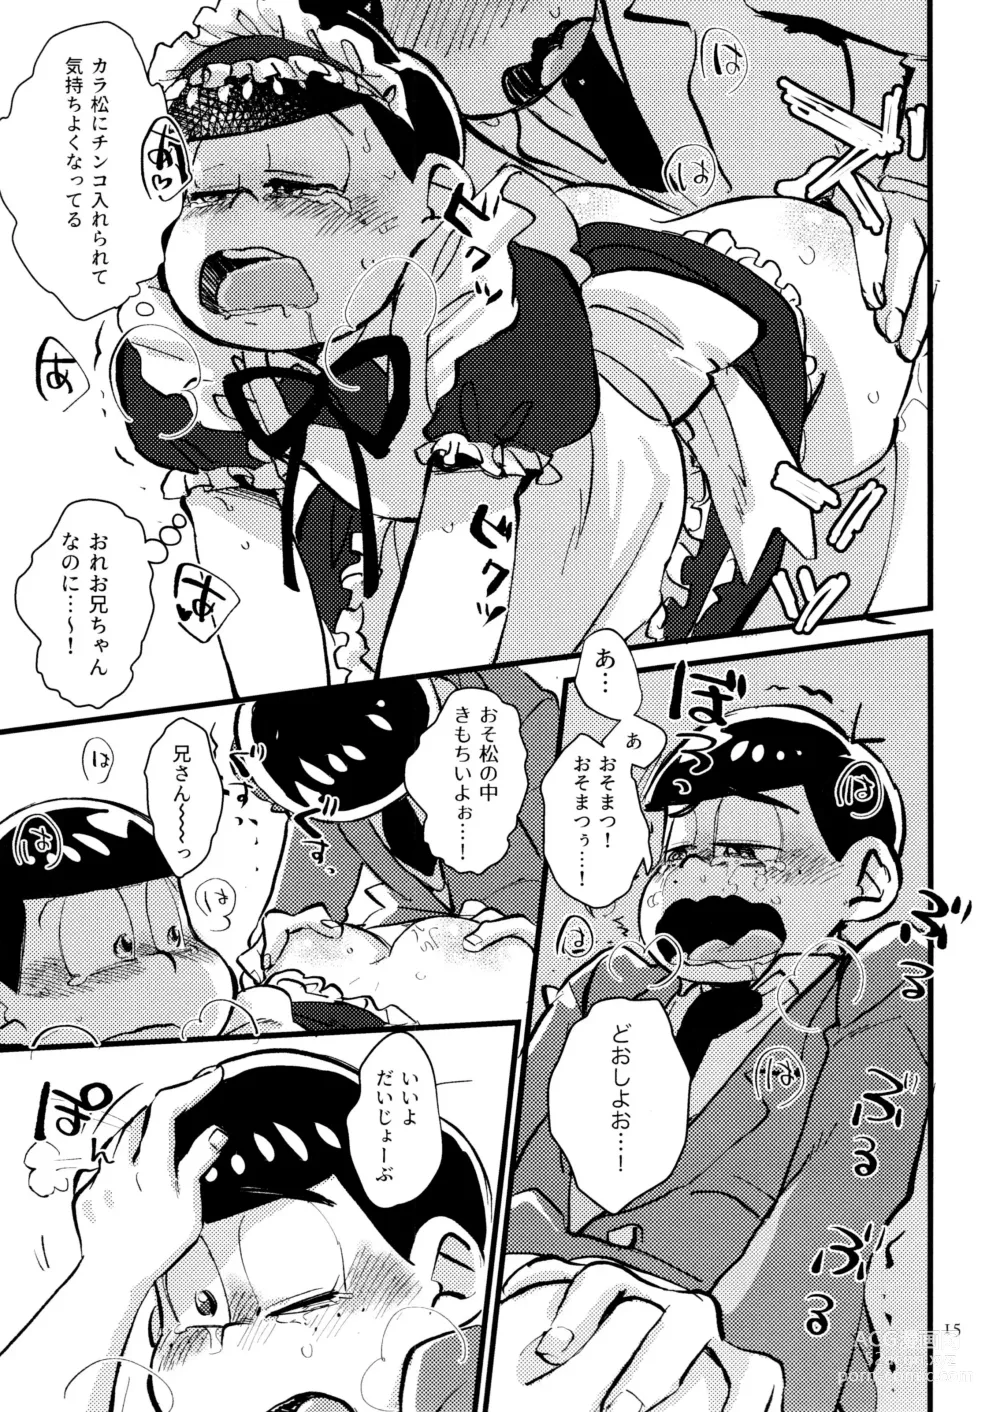 Page 15 of doujinshi Boku no Ecchi na Onii-chan